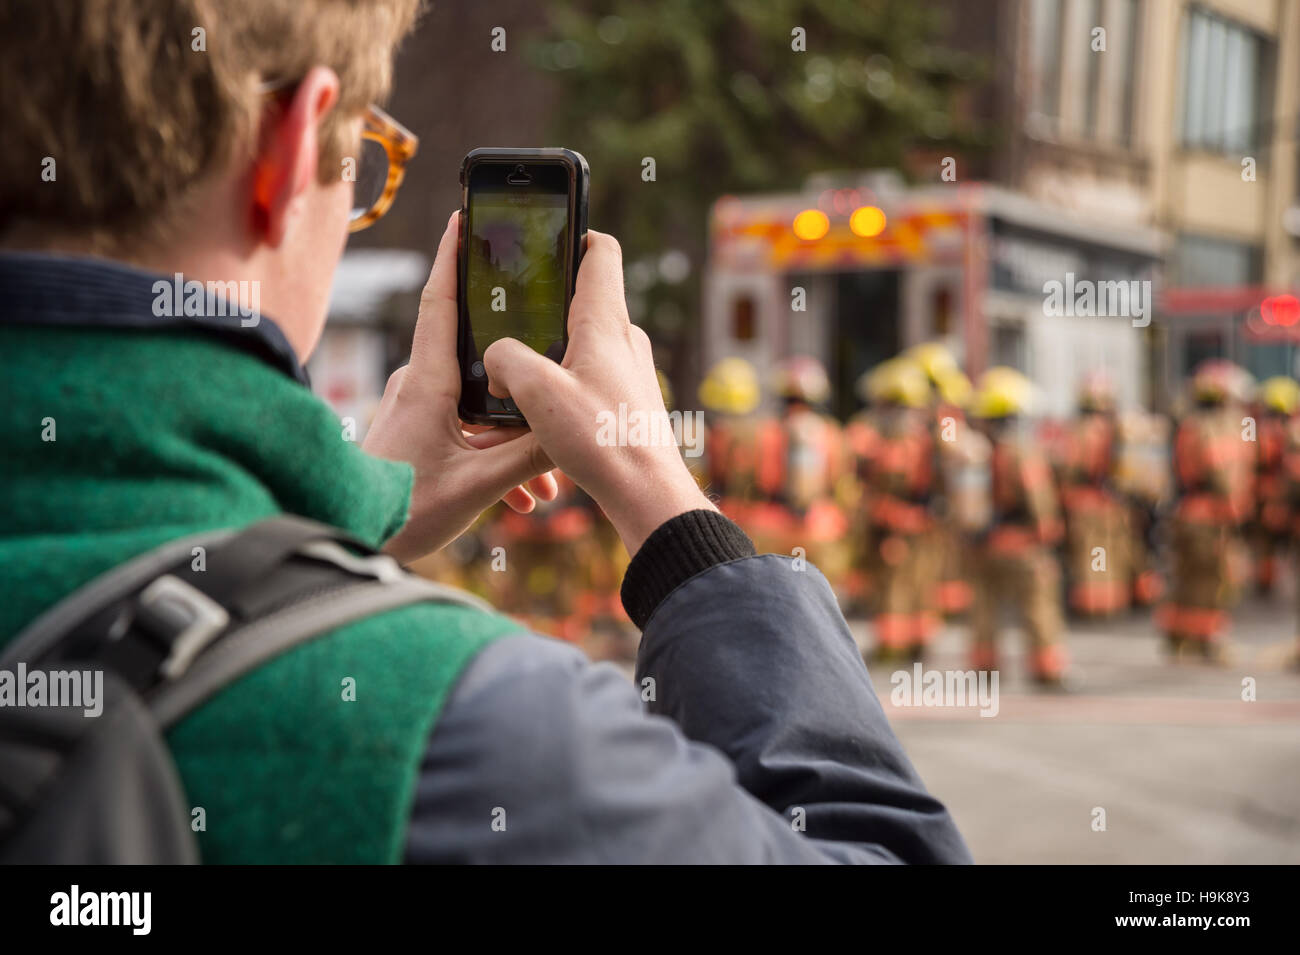 Montreal, Ca - 23. Nov. 2016: männlich Fußgängerzone Bilder nimmt mit Smartphone als Feuerwehrmänner auf 'Cafe Amusement 68' arbeiten Stockfoto